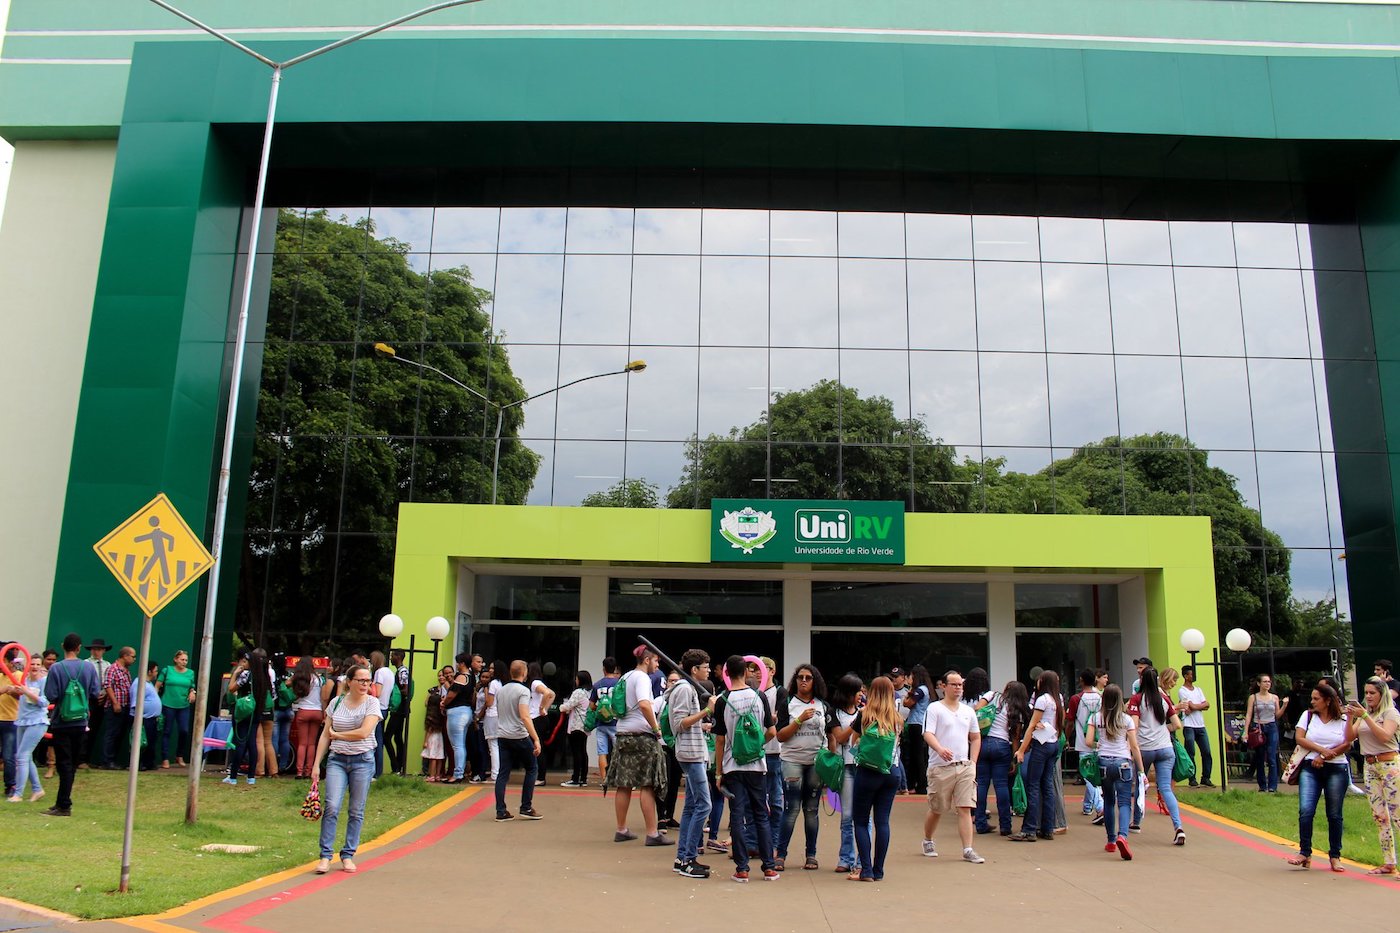 Uni Rio Verde Healthy Campus4